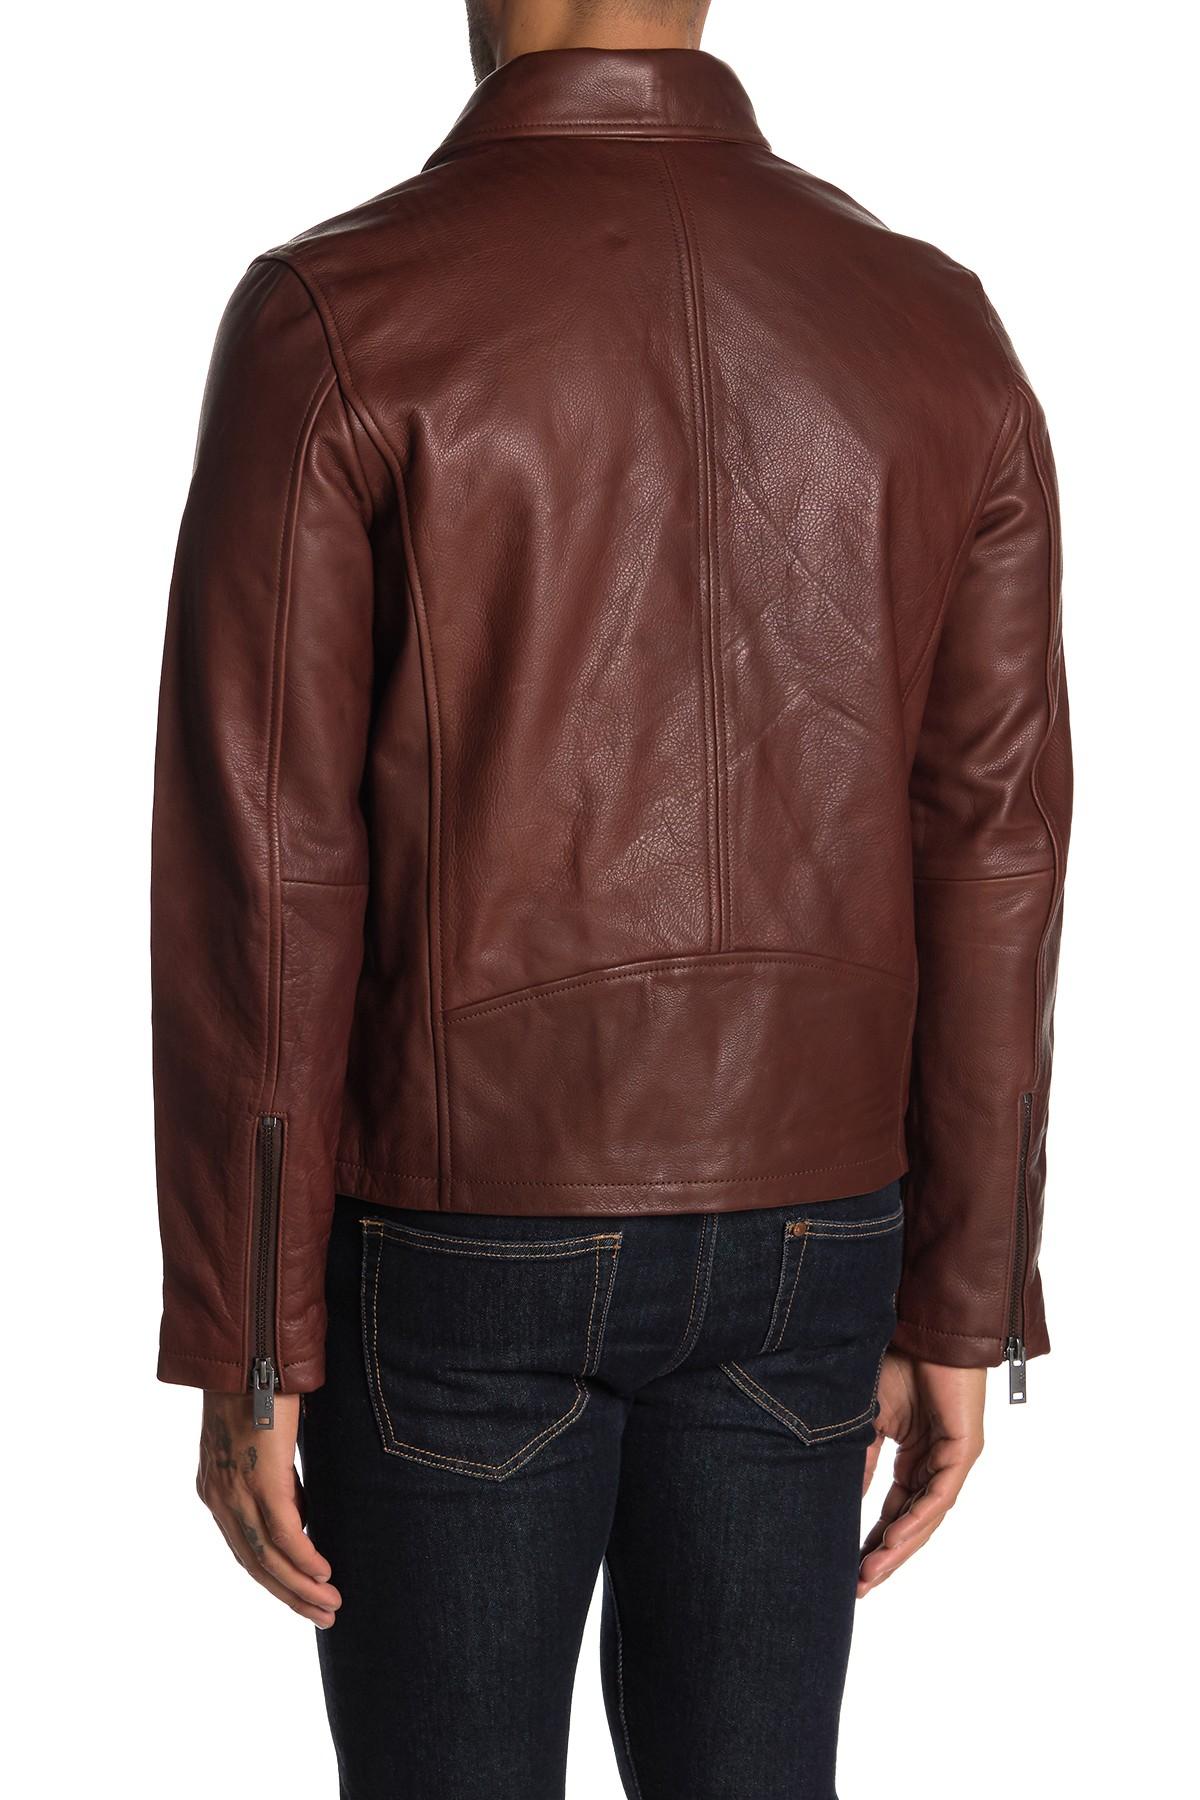 UGG Vaughn Leather Moto Jacket in Dark Chestnut (Brown) for Men - Lyst